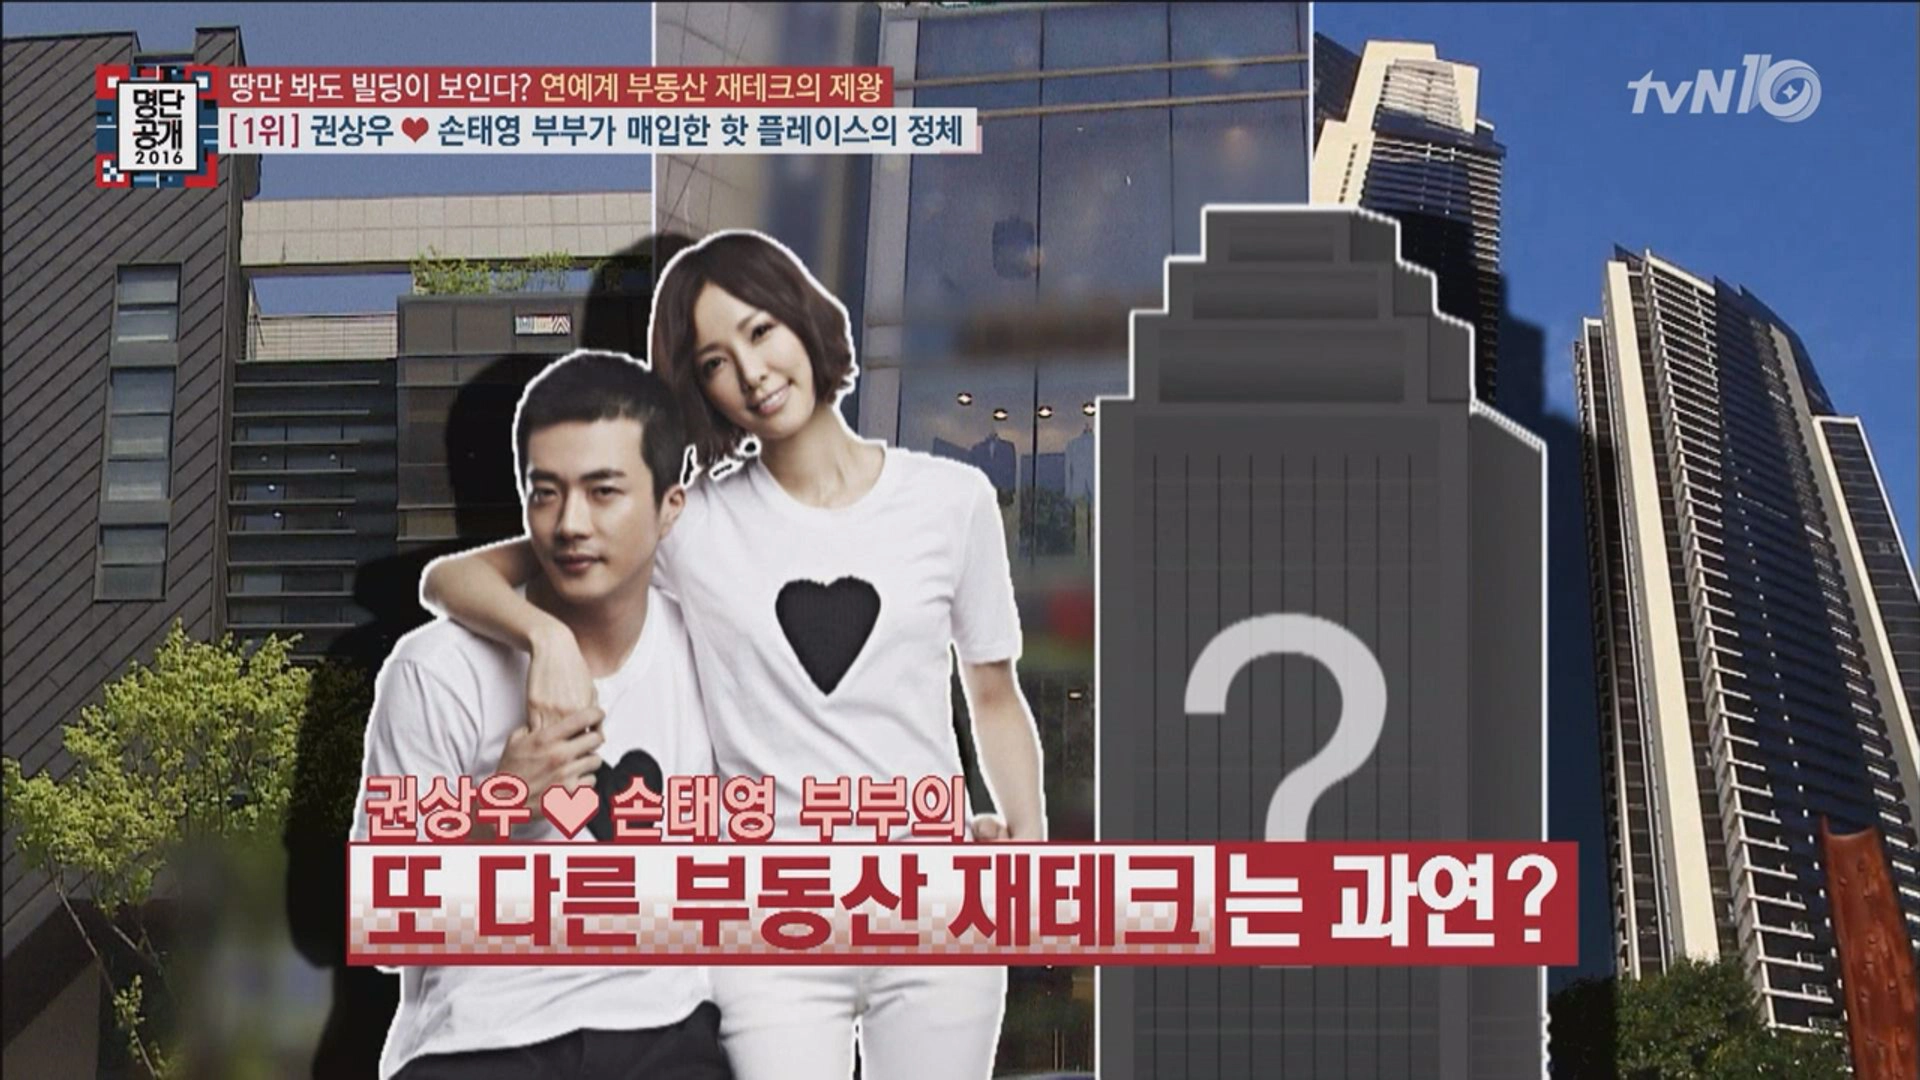 Cặp vợ chồng Nam diễn viên từng được một số đài truyền hình Hàn Quốc đưa tin về khối tài sản kếch xù